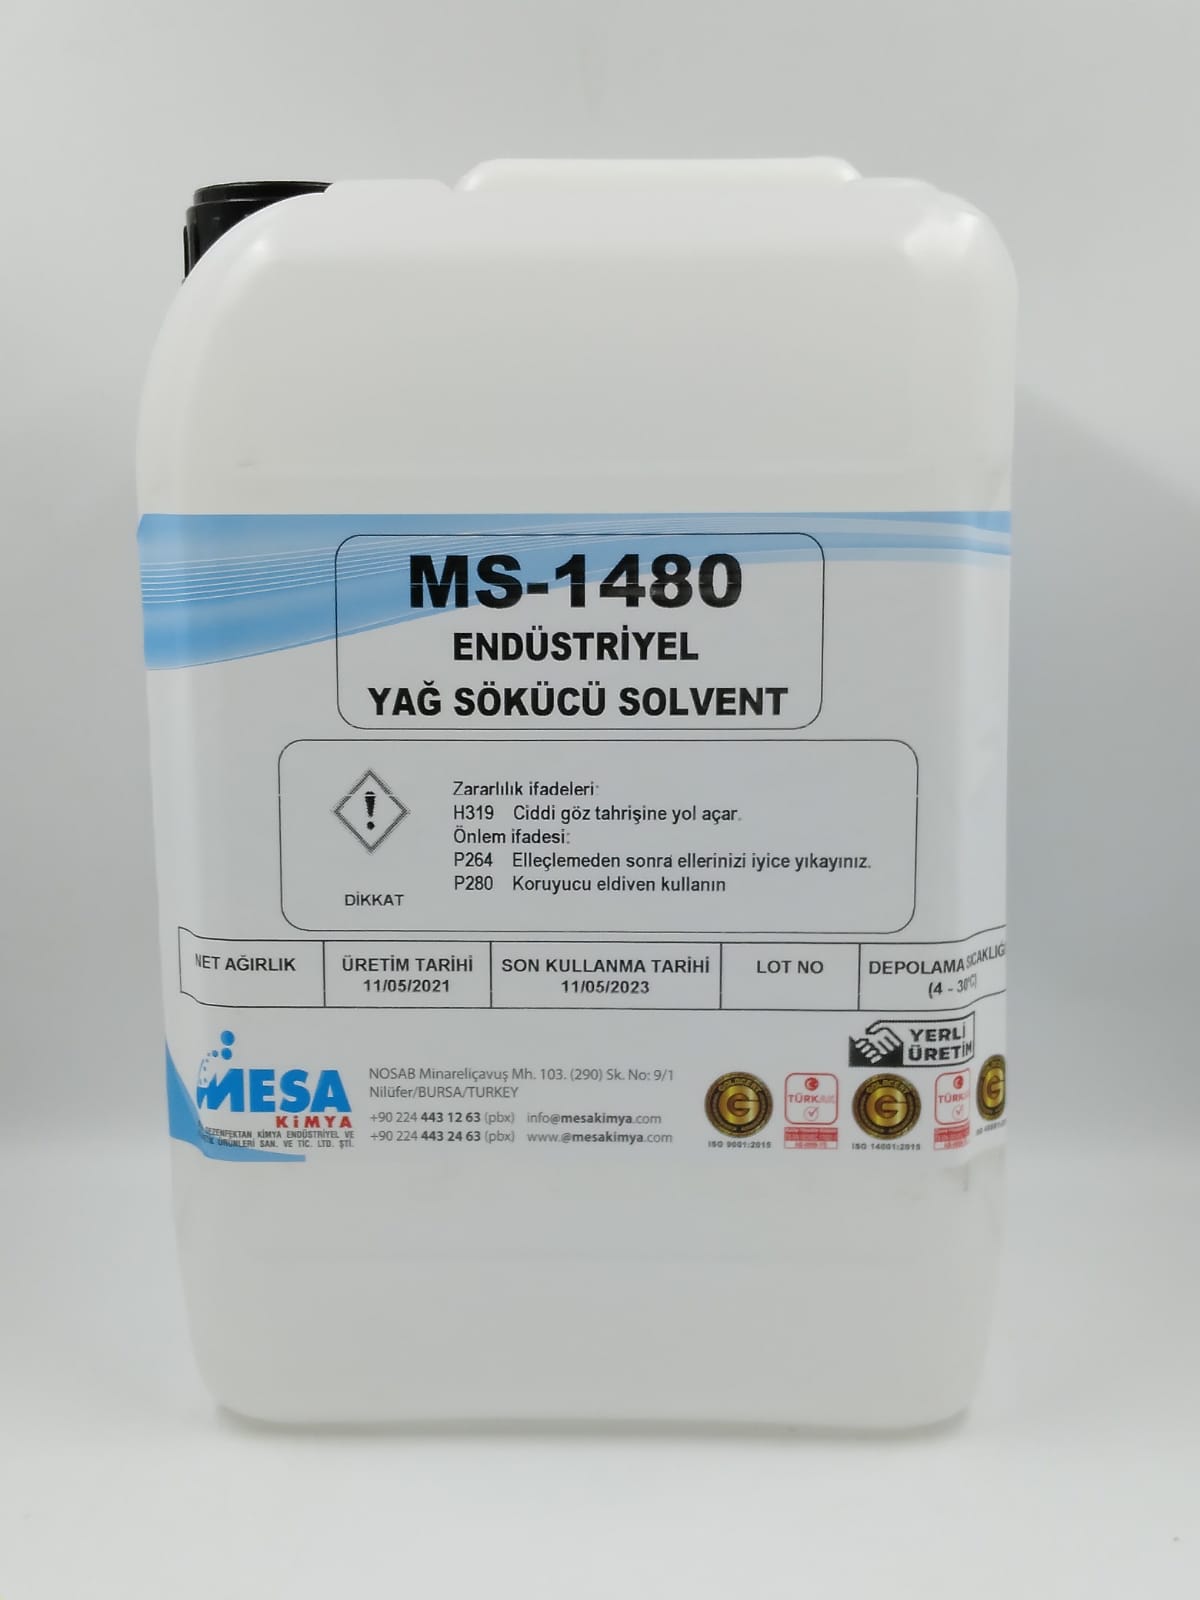 Yağ sökücü solvent MS-1480